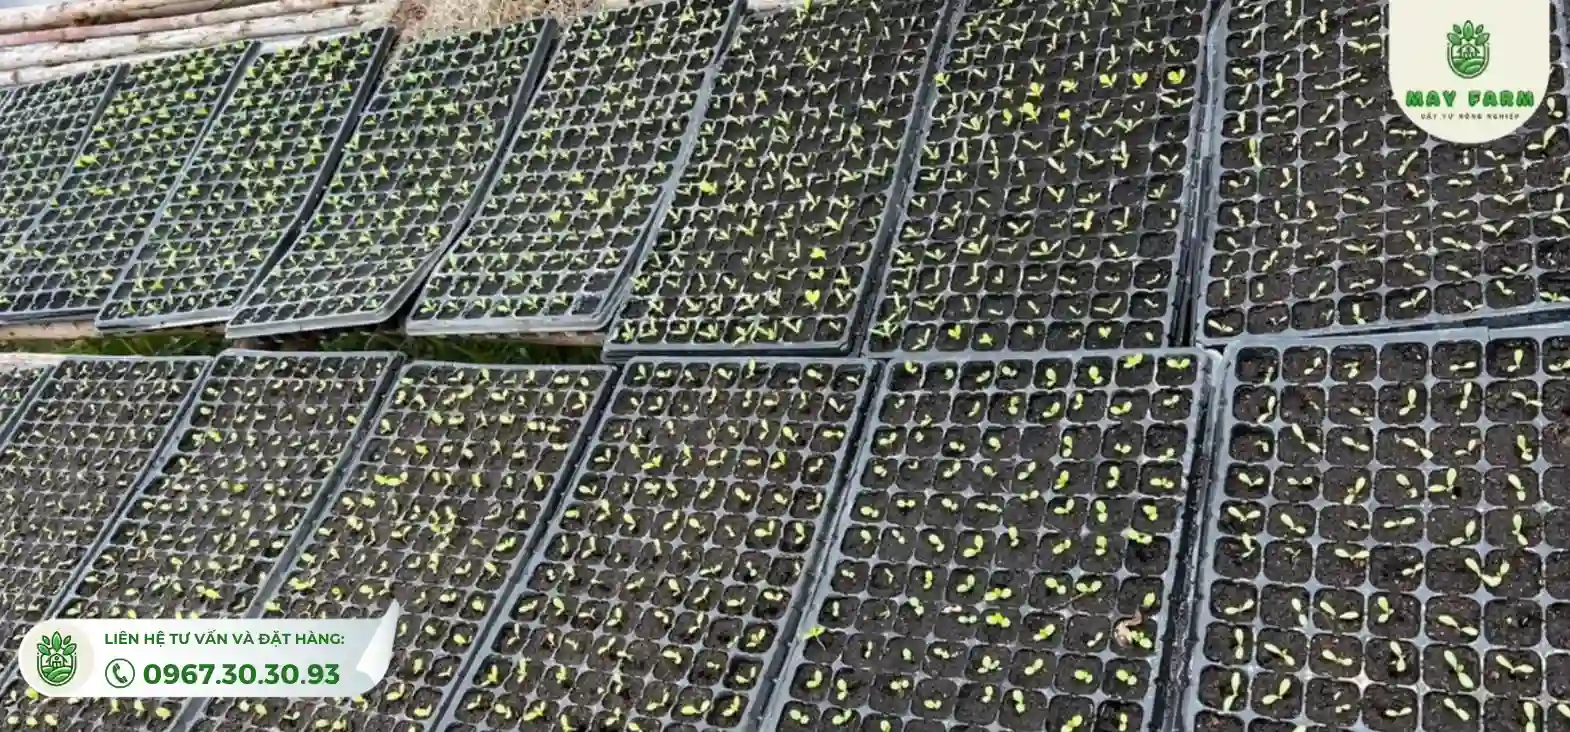 khay ươm hạt giống 200 lỗ mang lại lợi ích không chỉ về  kinh tế mà còn quản lý vườn ươm một cách hiệu quả